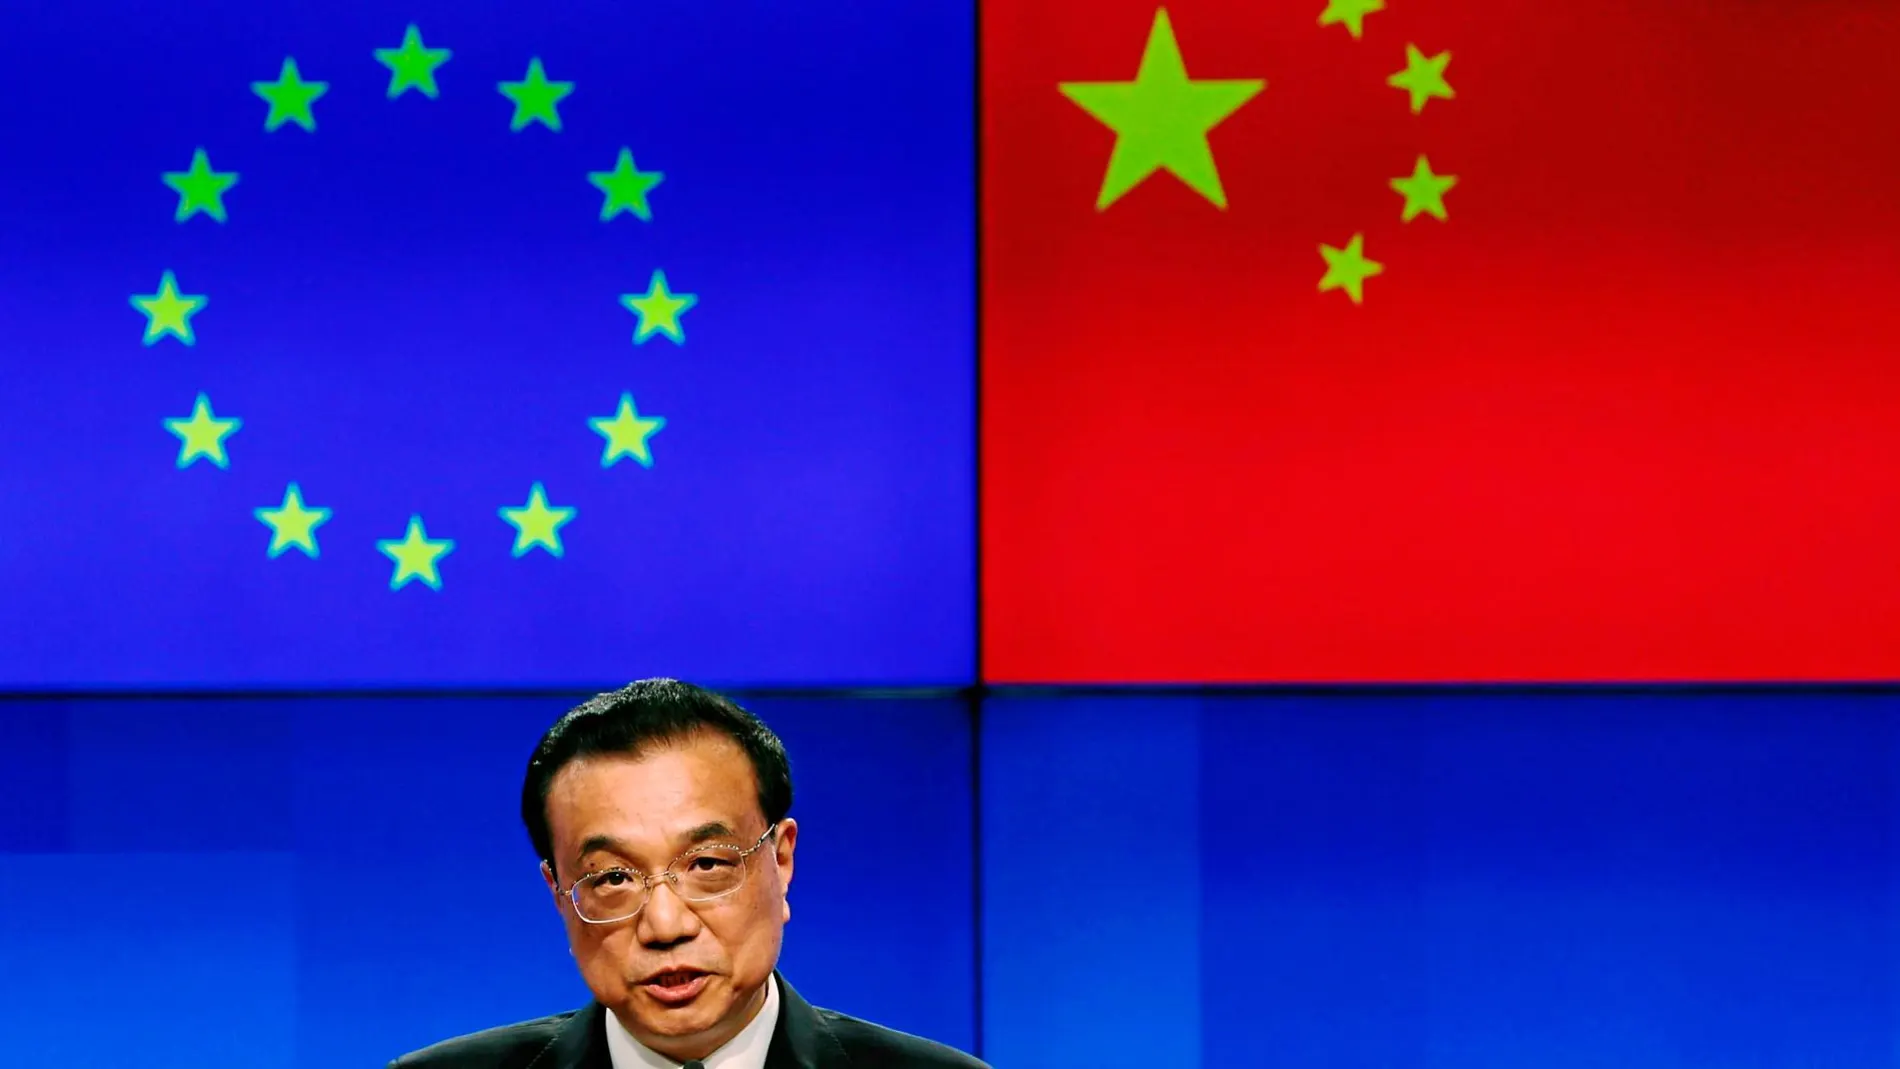 El primer ministro chino, Li Kwqiang, comparece ante la prensa tras la cumbre entre la UE y China celebrada ayer en Bruselas